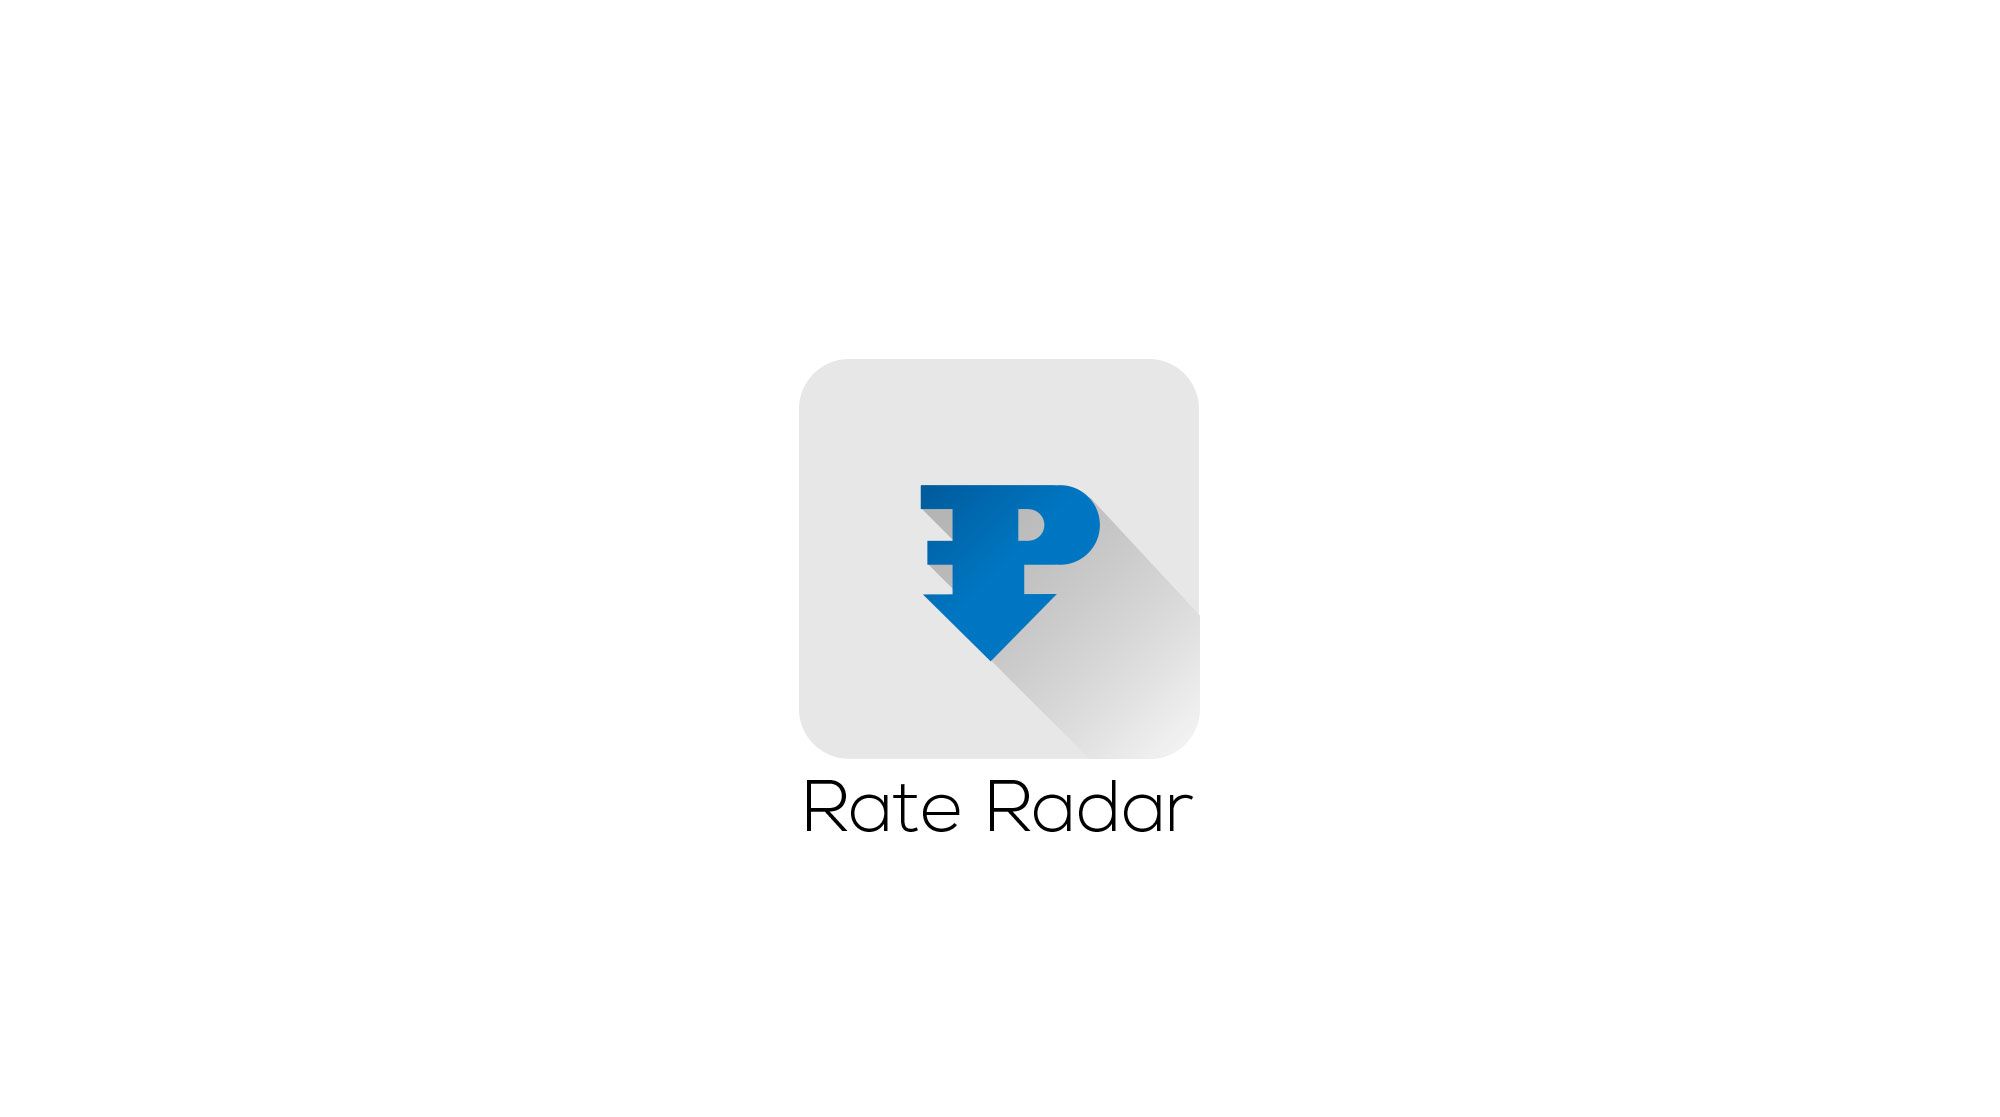 Фирменный стиль + лого для Rate Radar - дизайнер Knock-knock